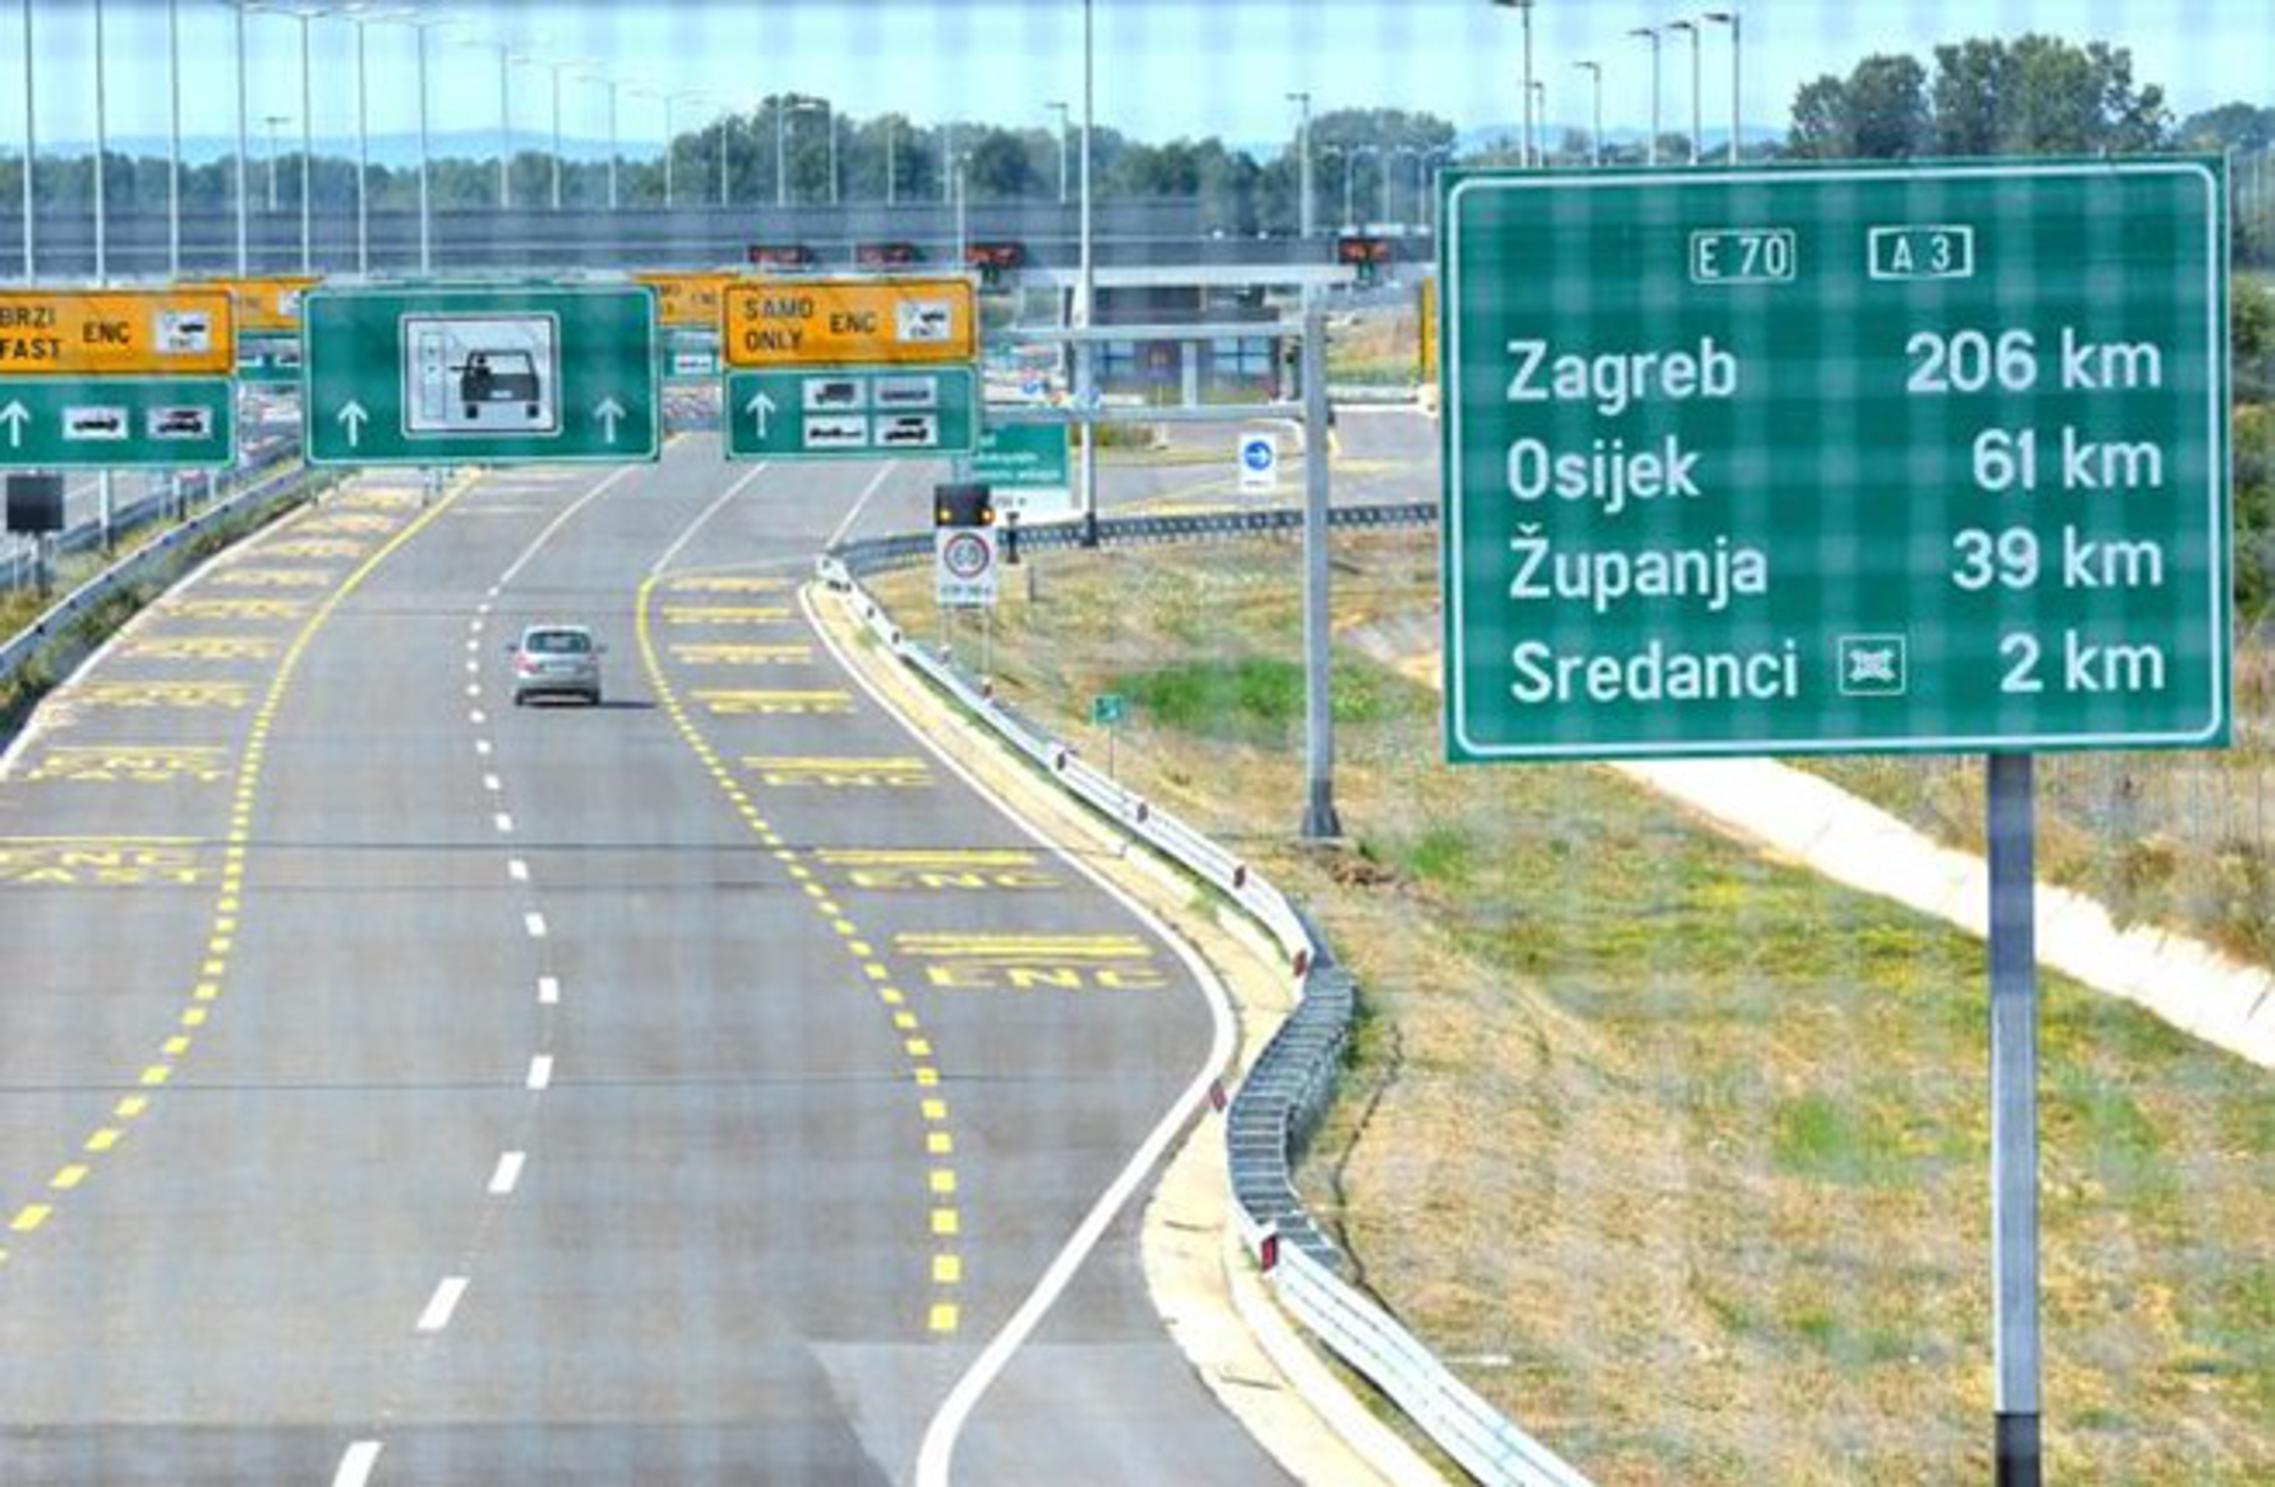 Kada most Svilaj bude završen, ondje će biti glavni kamionski terminal i carinski prijelaz prema BiH